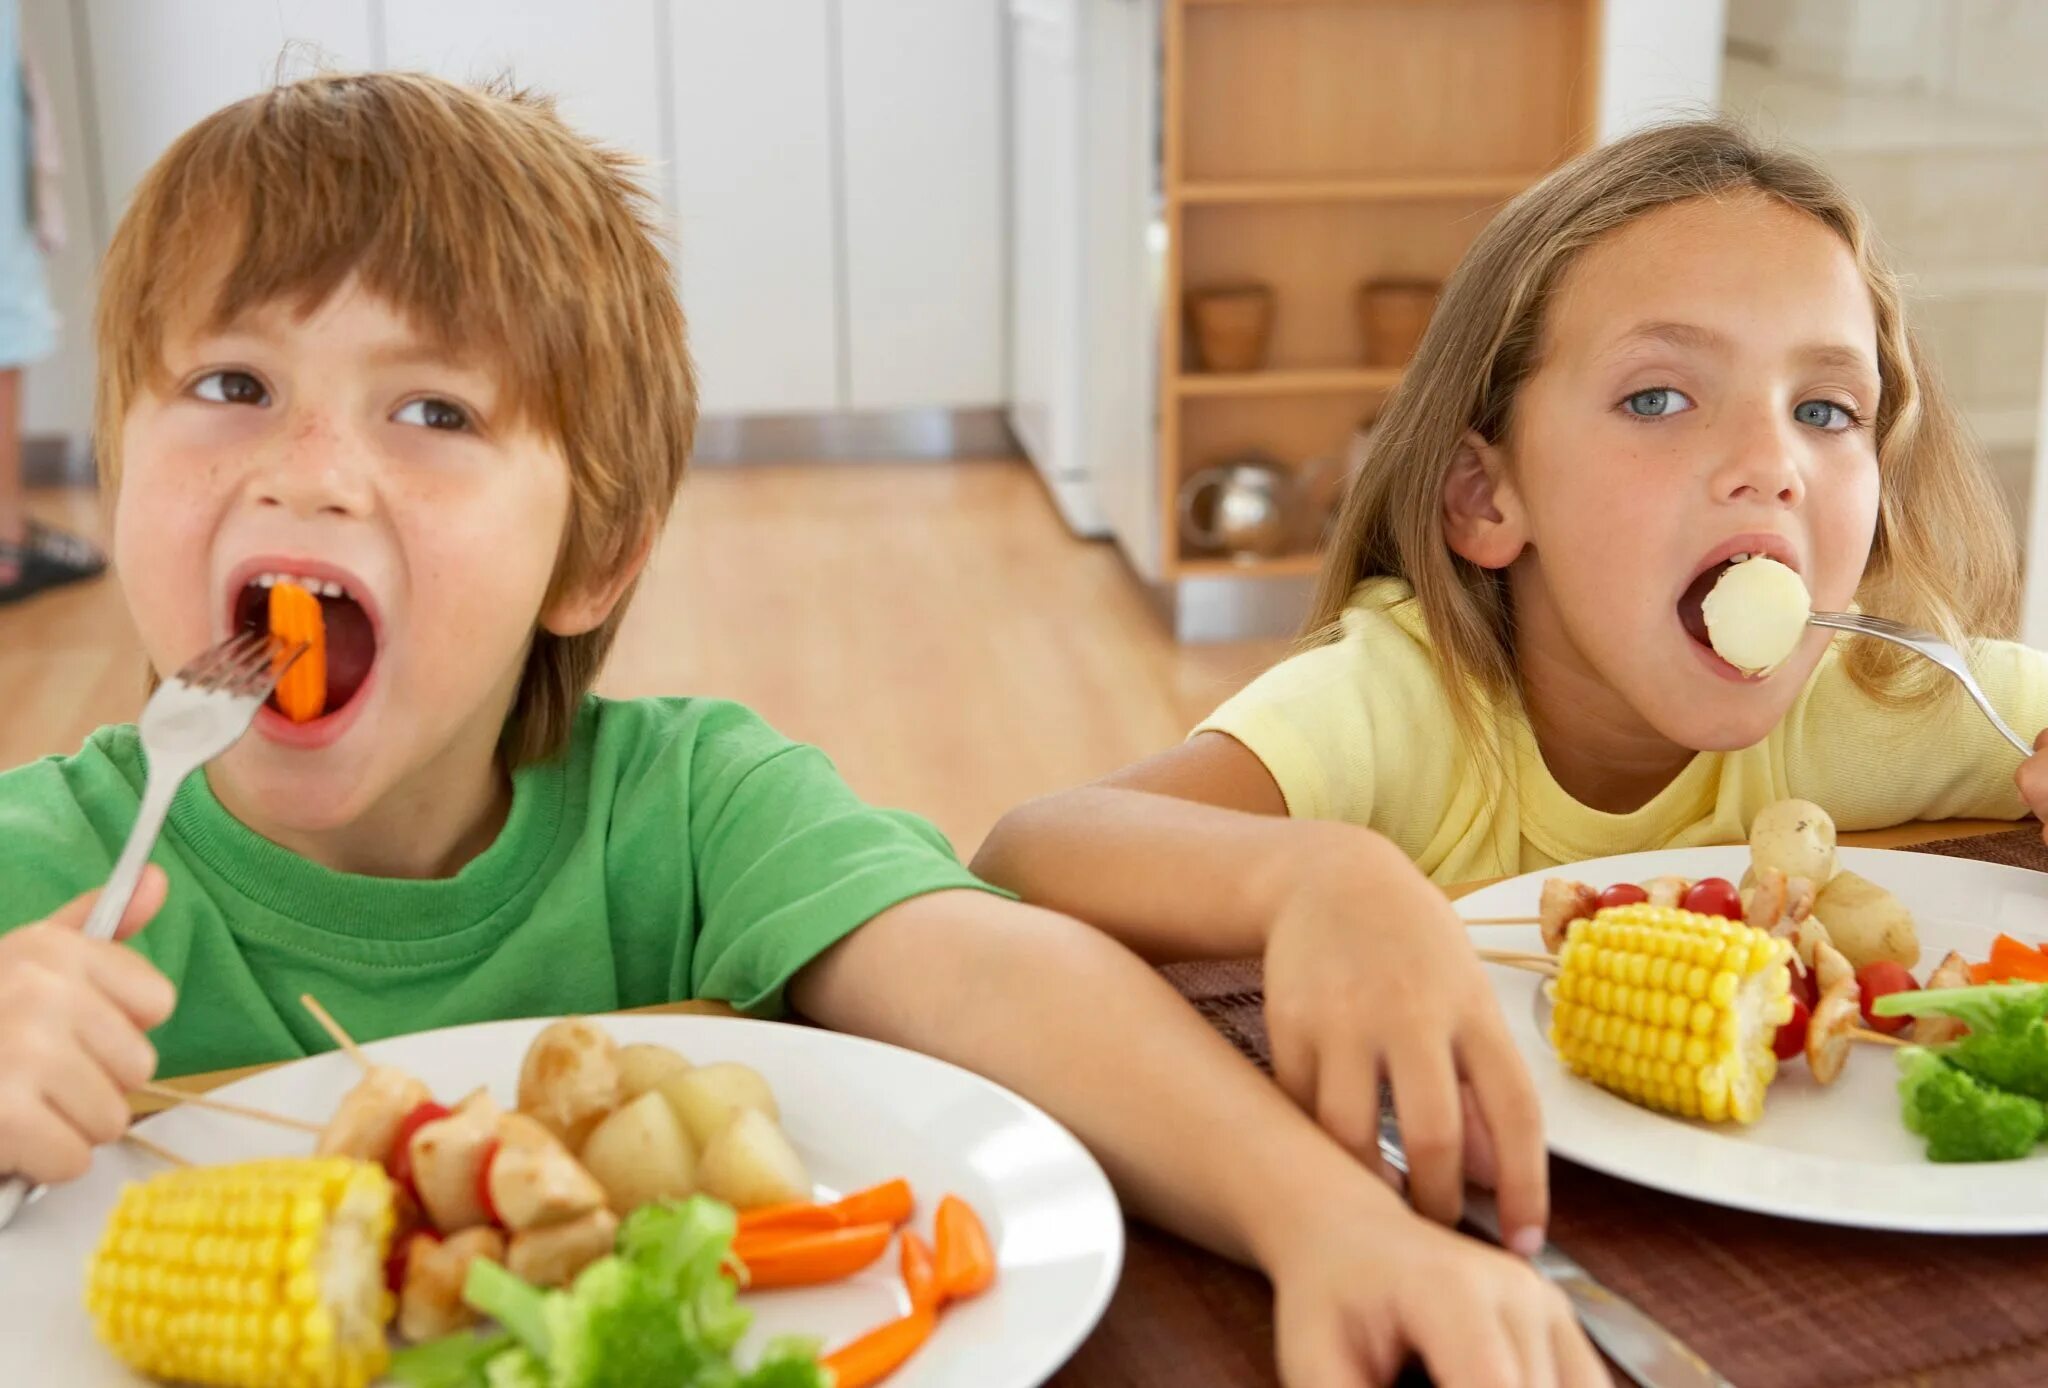 Пробуем разную еду. Питание детей. Еда для детей. Рациональное питание детей. Здоровое питание для детей школьного возраста.